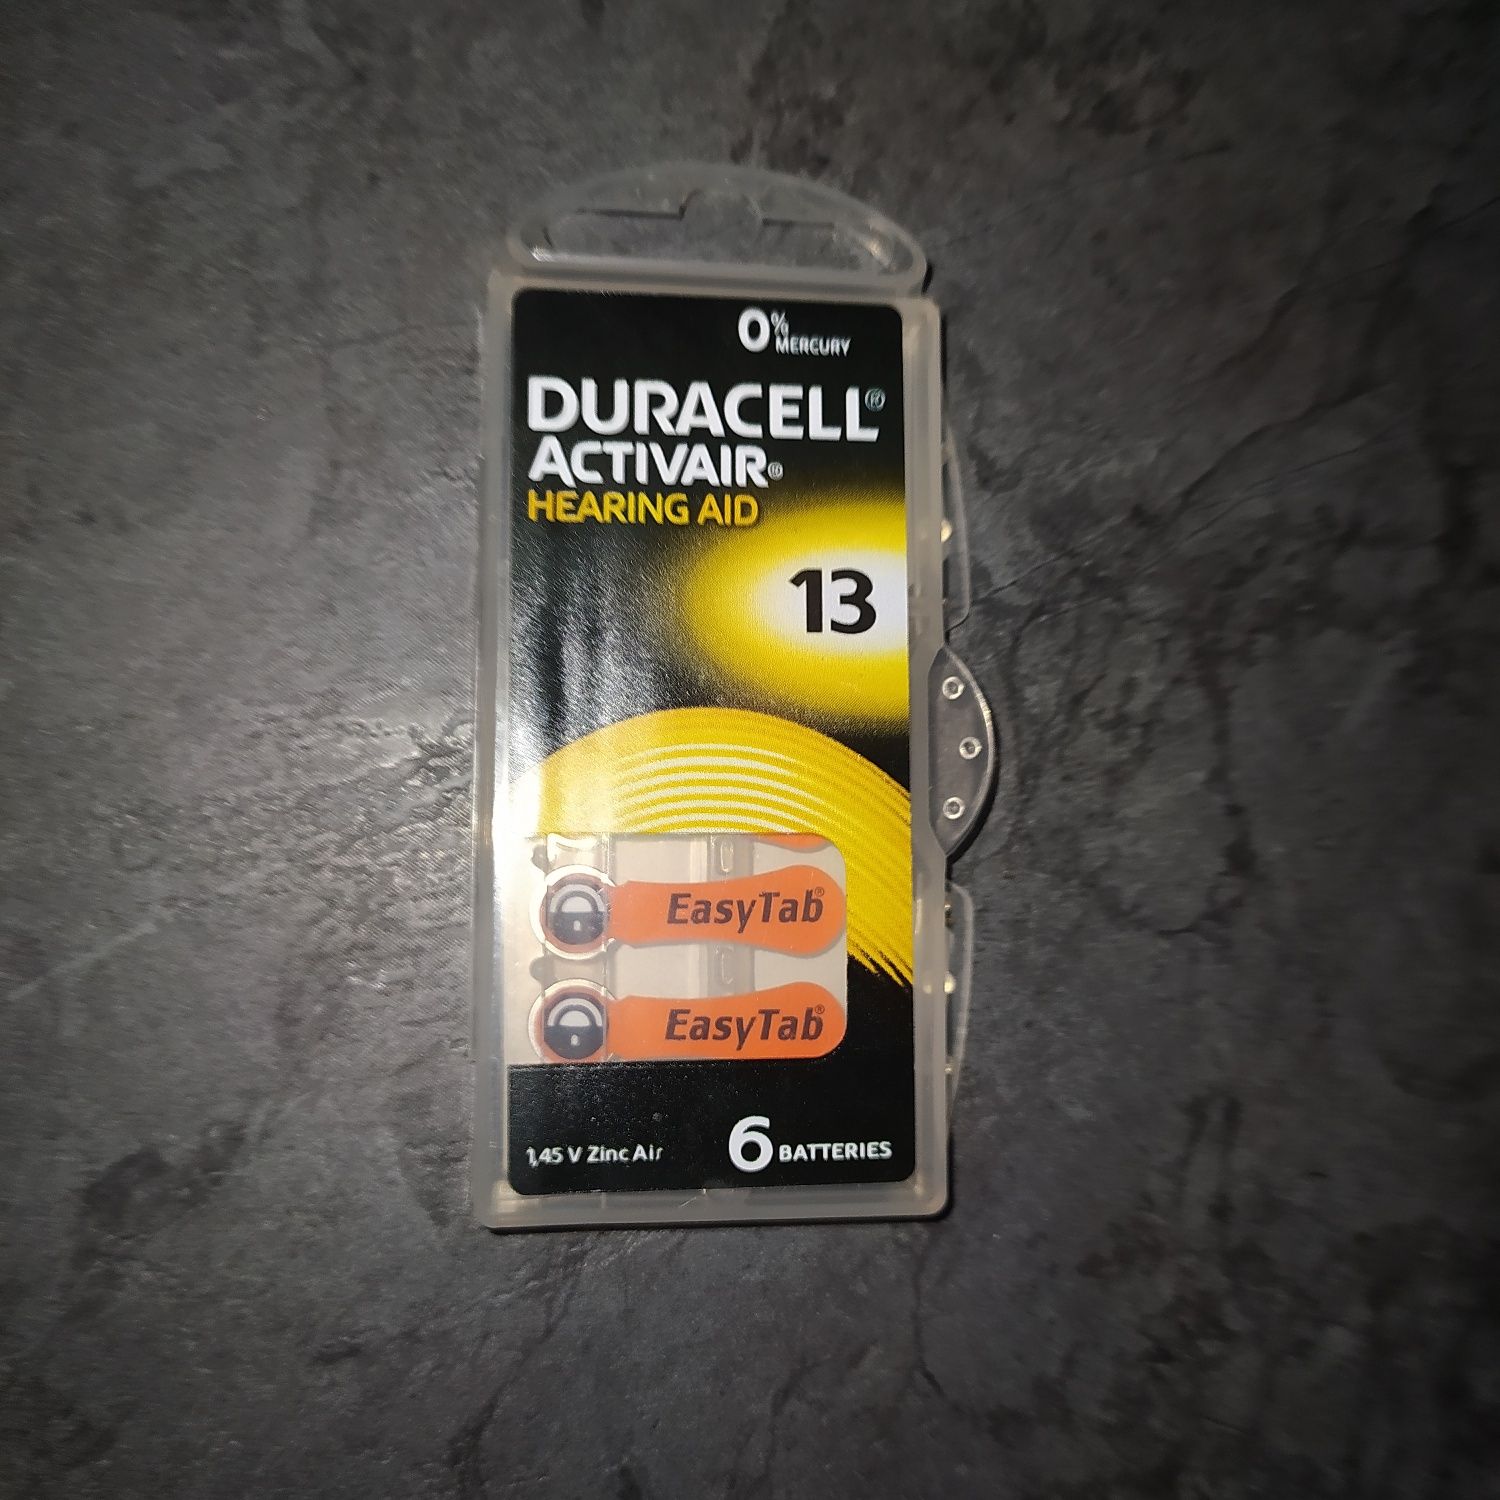 Duracell Activair 13 baterie do aparatu słuchowego